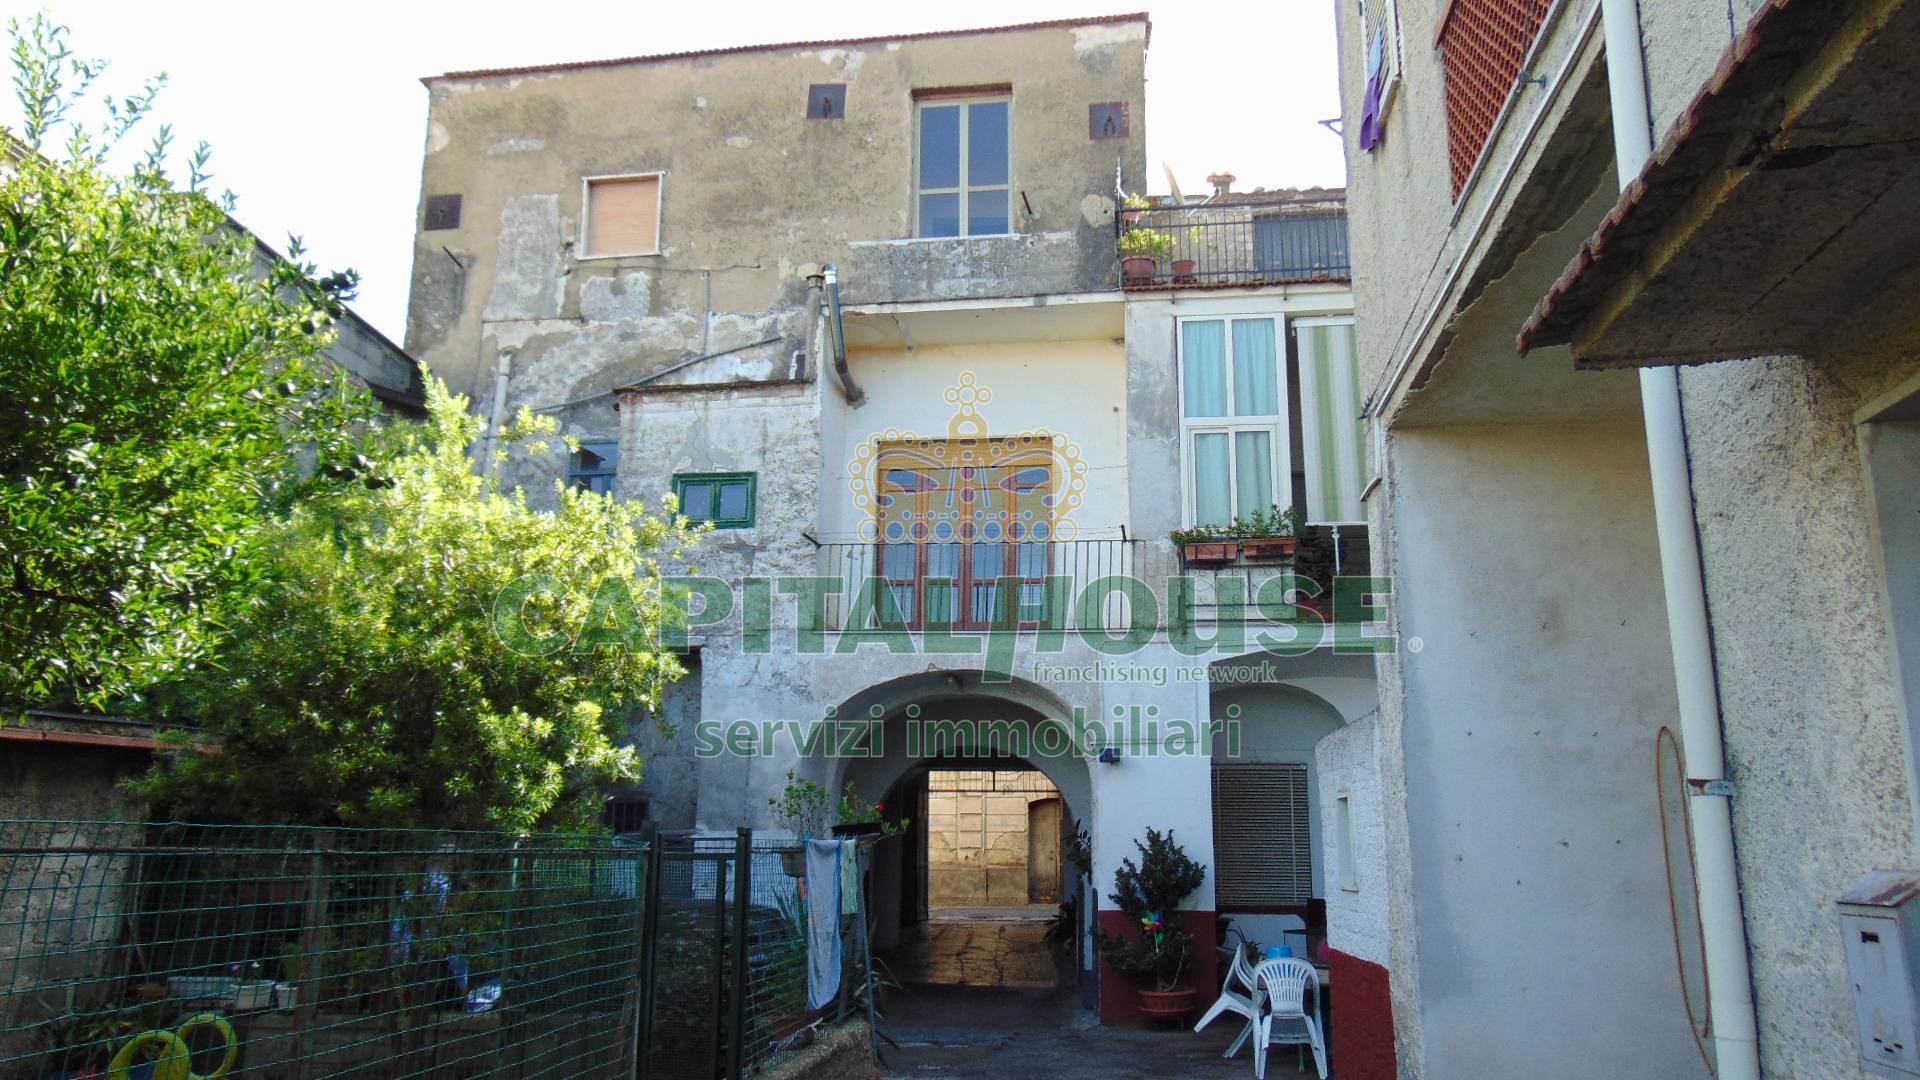 Appartamento in vendita a Baiano, 4 locali, prezzo € 45.000 | PortaleAgenzieImmobiliari.it